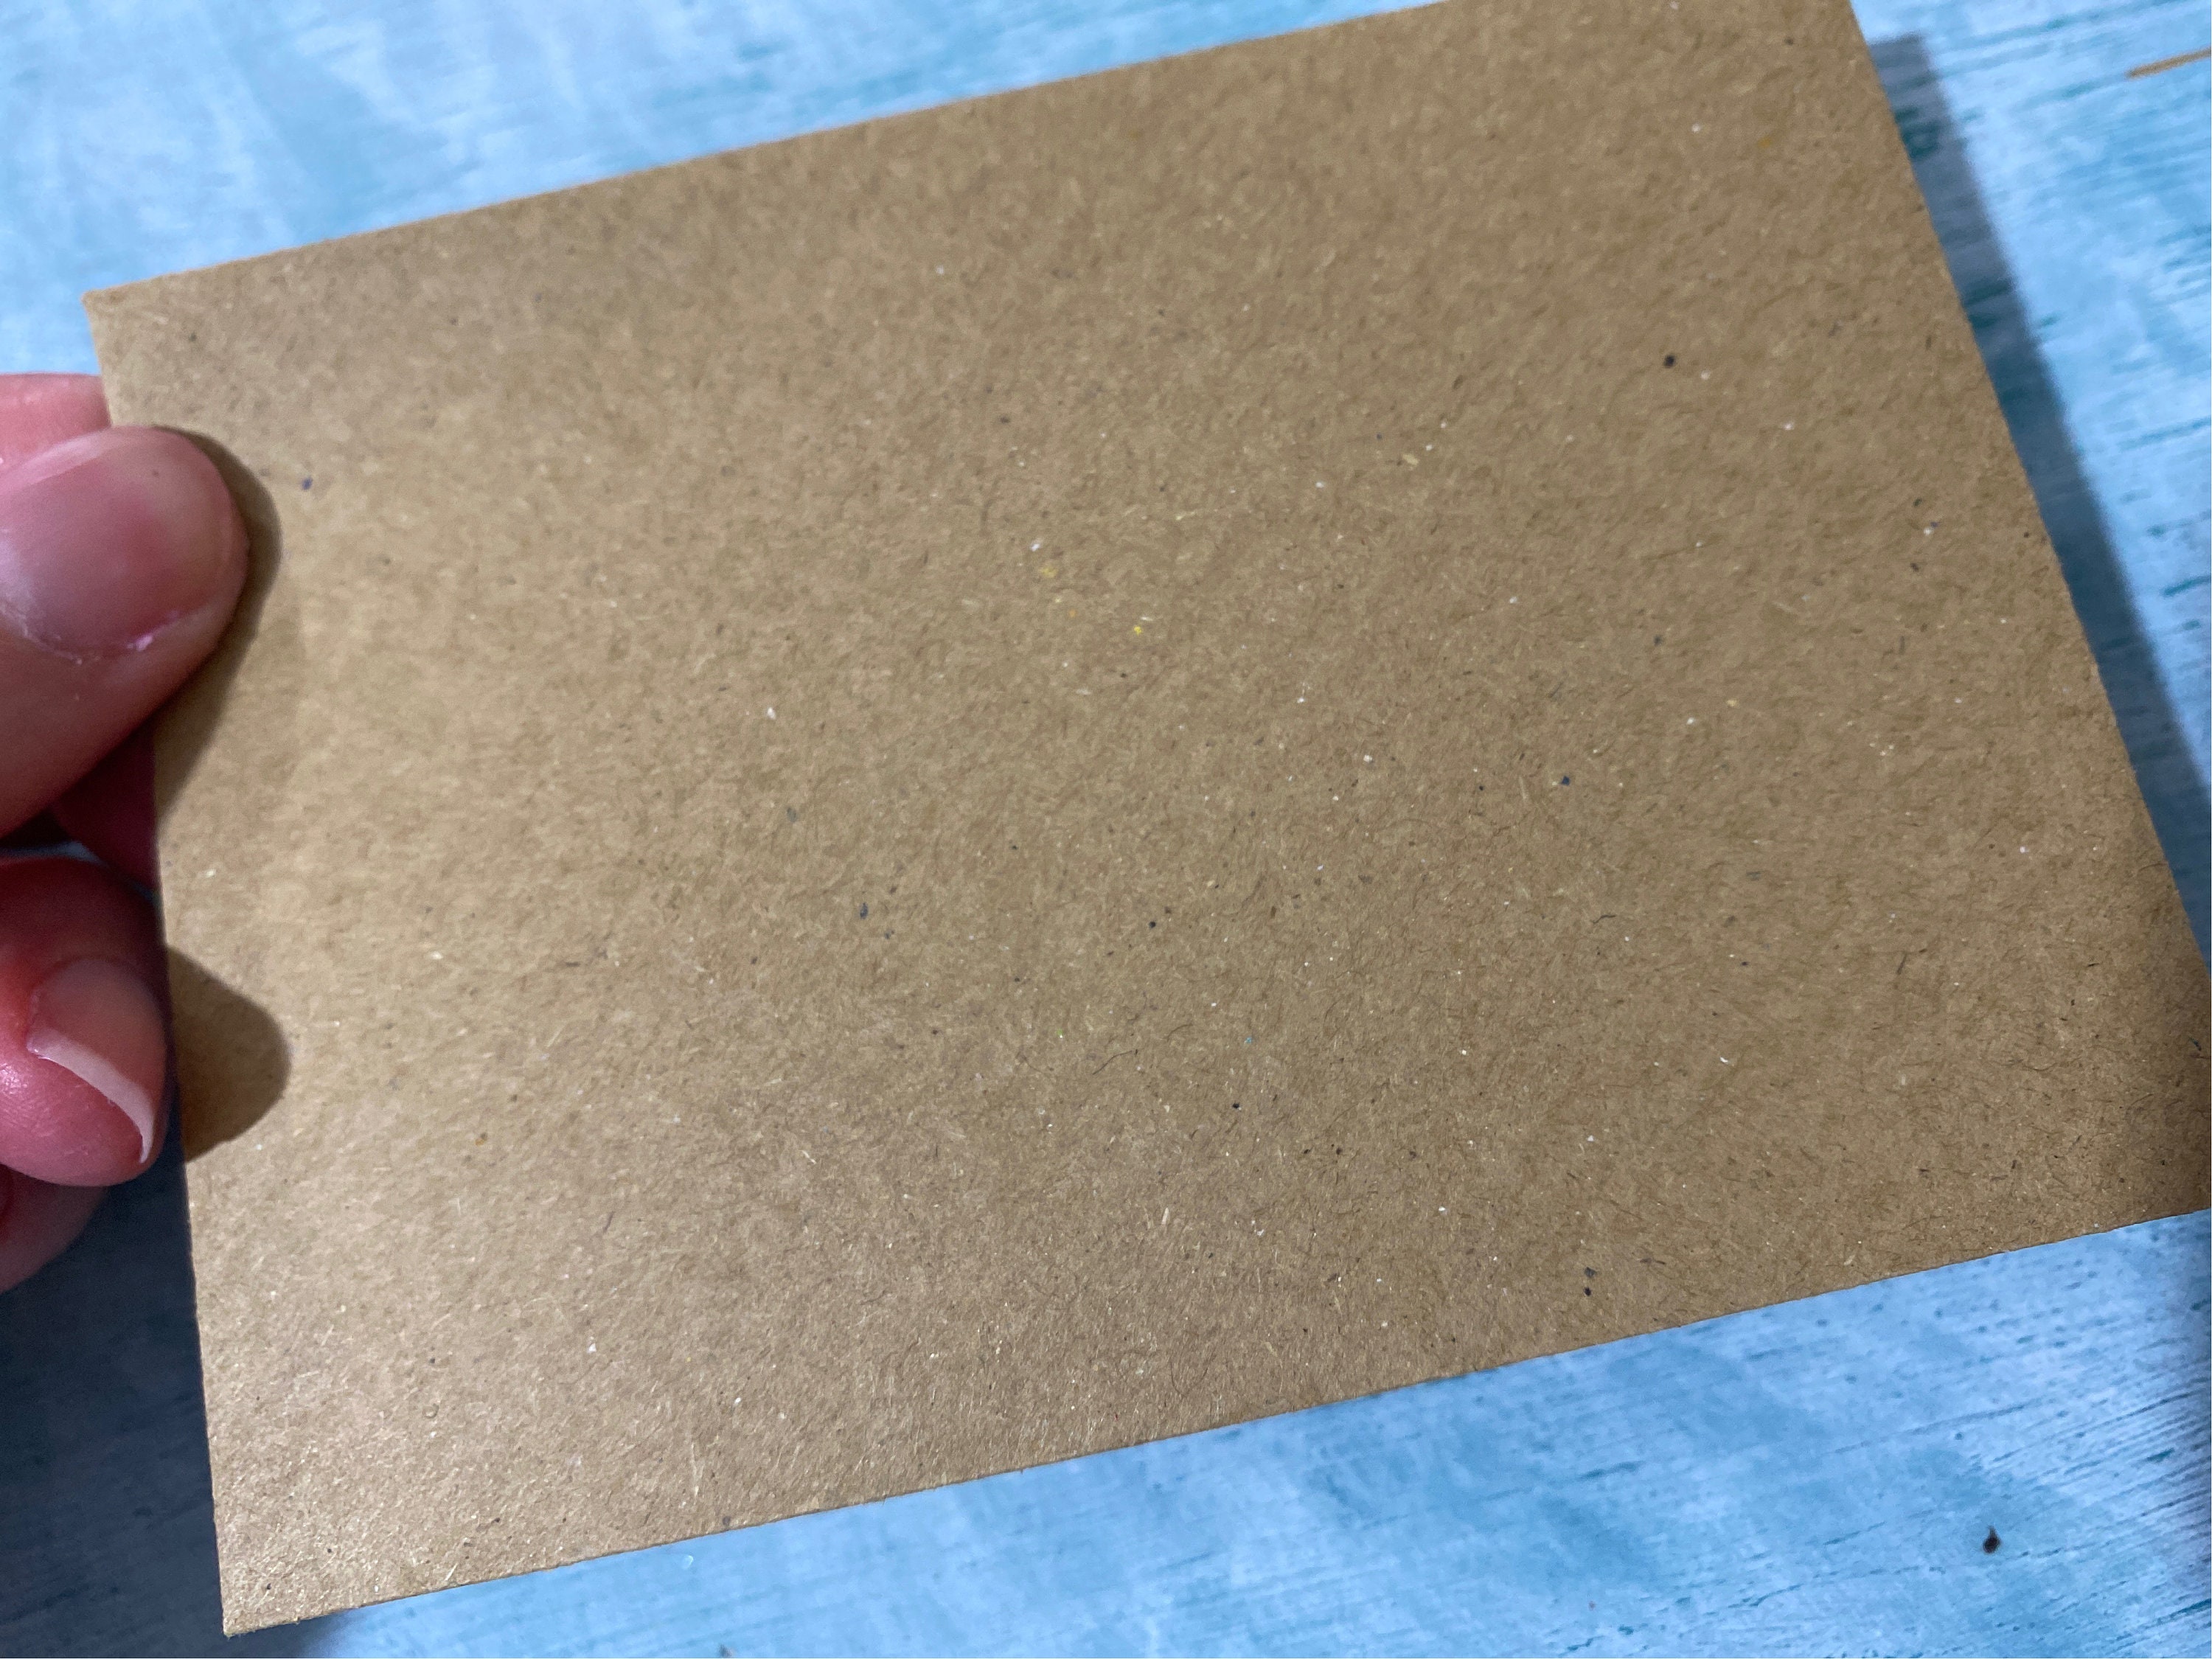 Mini enveloppes, petites enveloppes kraft marron, enveloppes kraft